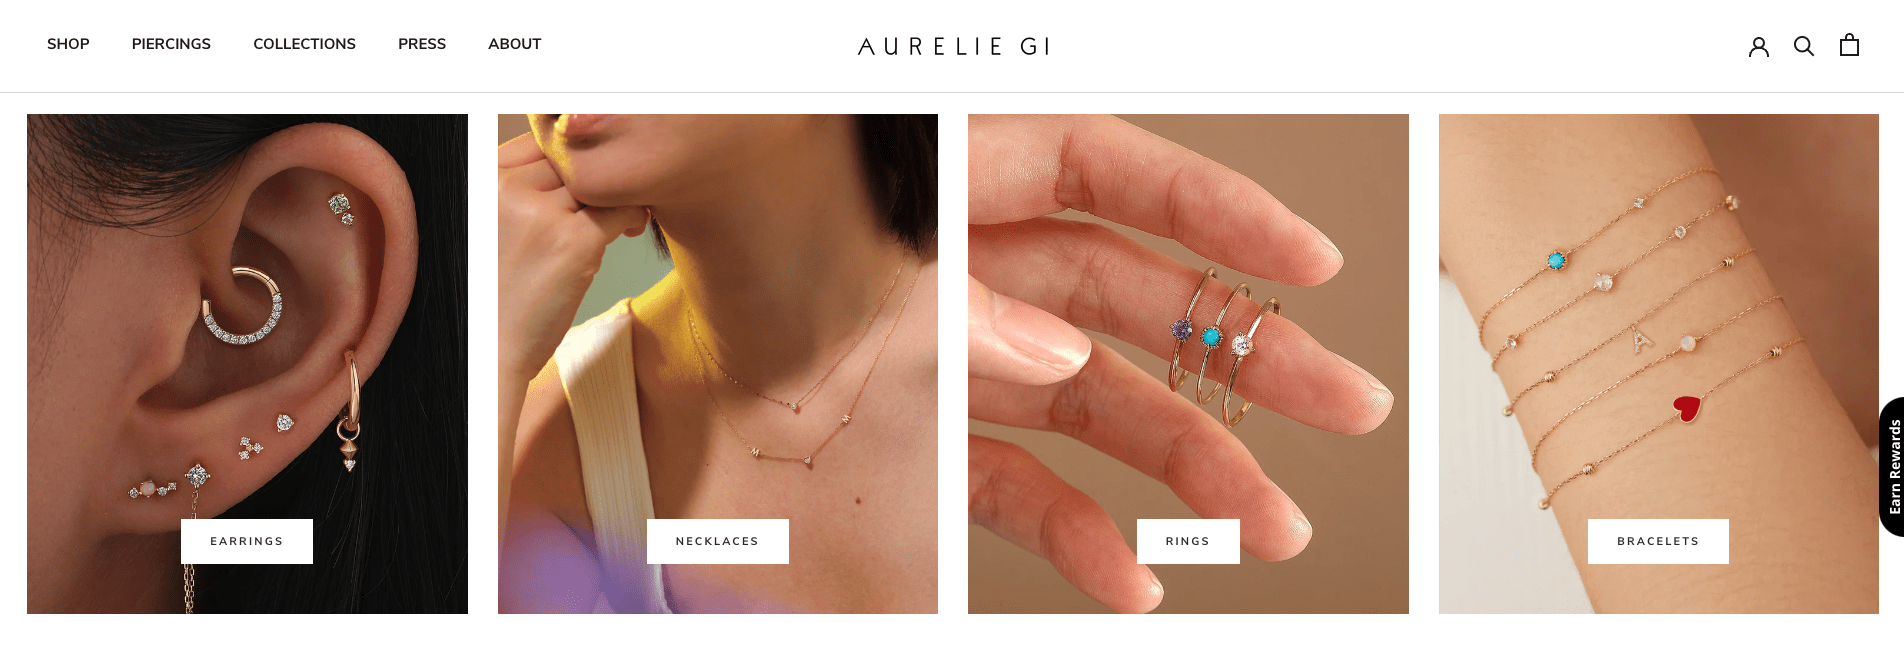 Aurelie Gi Shopify Jewelry Store 2 shopify jewelry stores